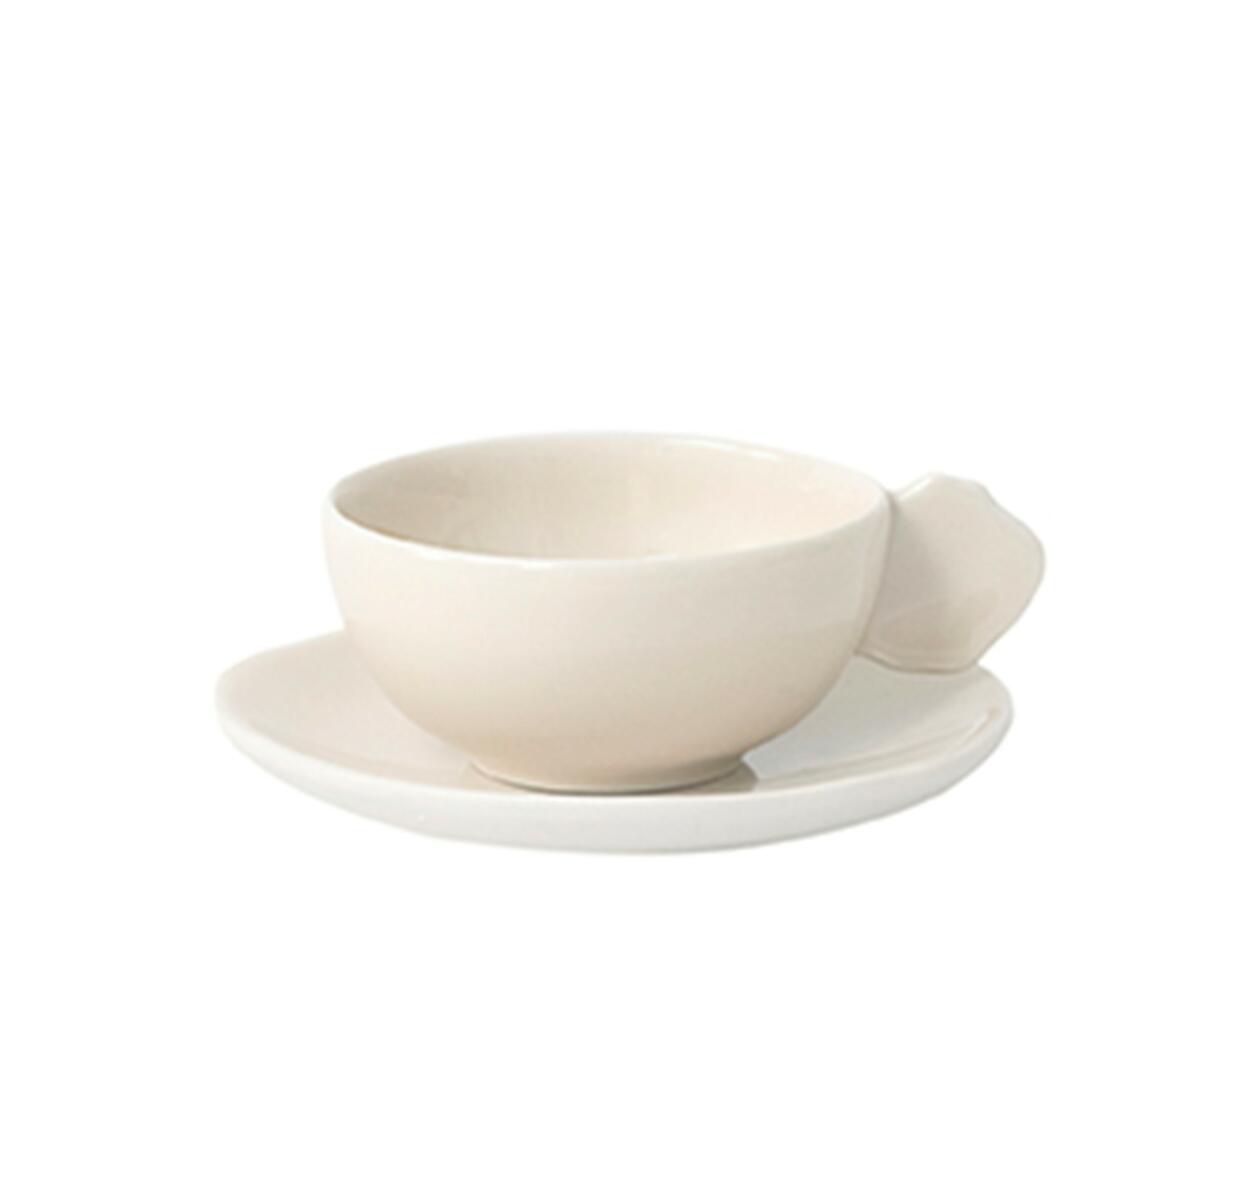 cup & saucer - s plume nude ceramic manufacturer